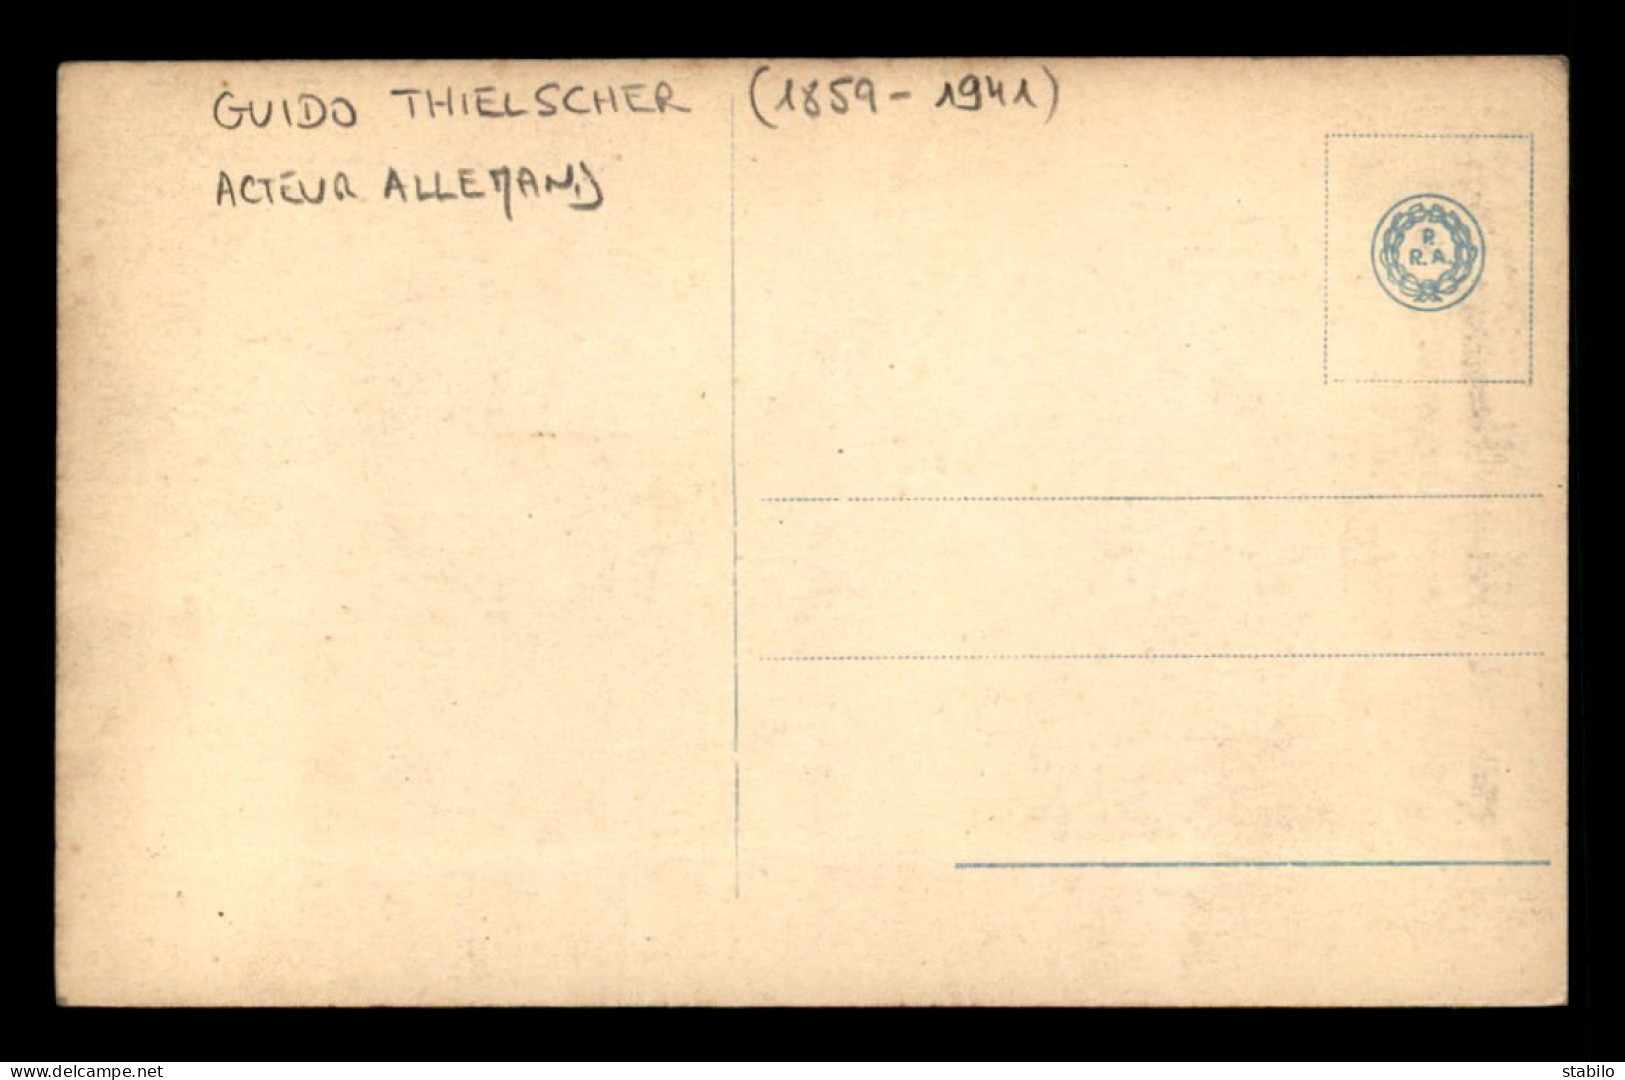 ARTISTES - GUIDO THIELSCHER (1859-1941) - ACTEUR ALLEMAND - Artisti